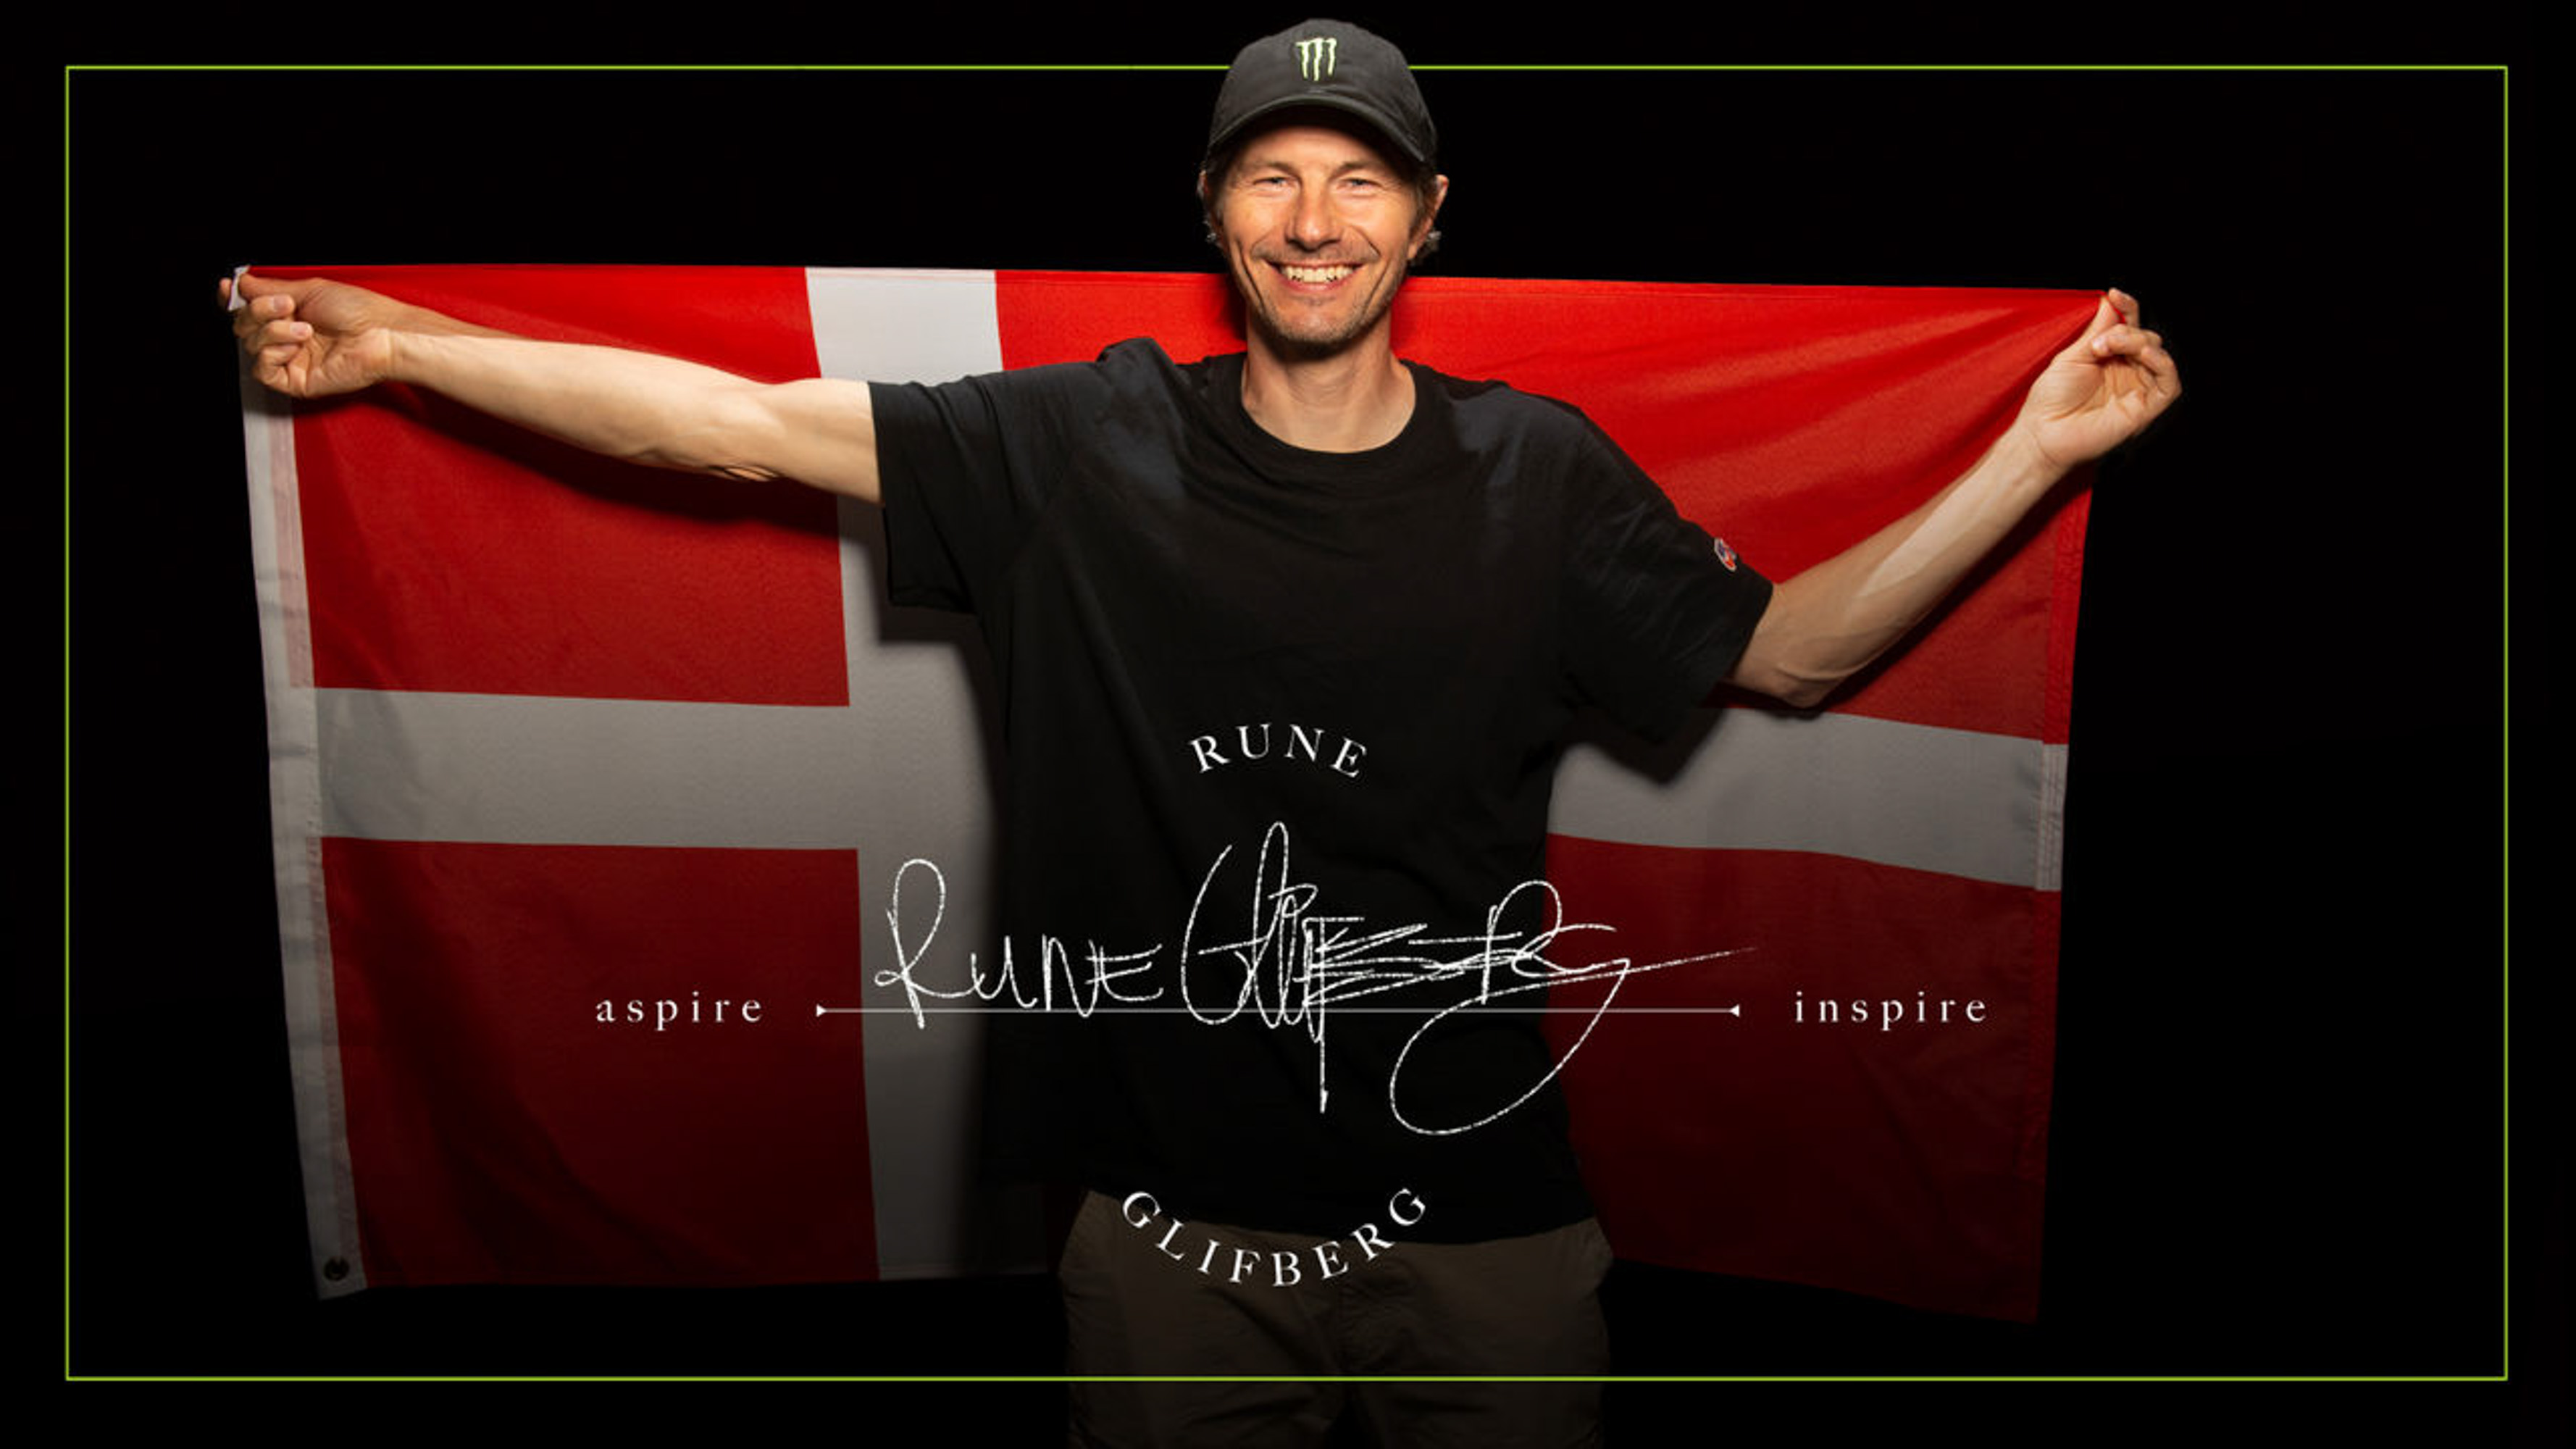 Monster Energy Releases New ‘Aspire – Inspire’ Feature on Skateboarder Rune Glifberg